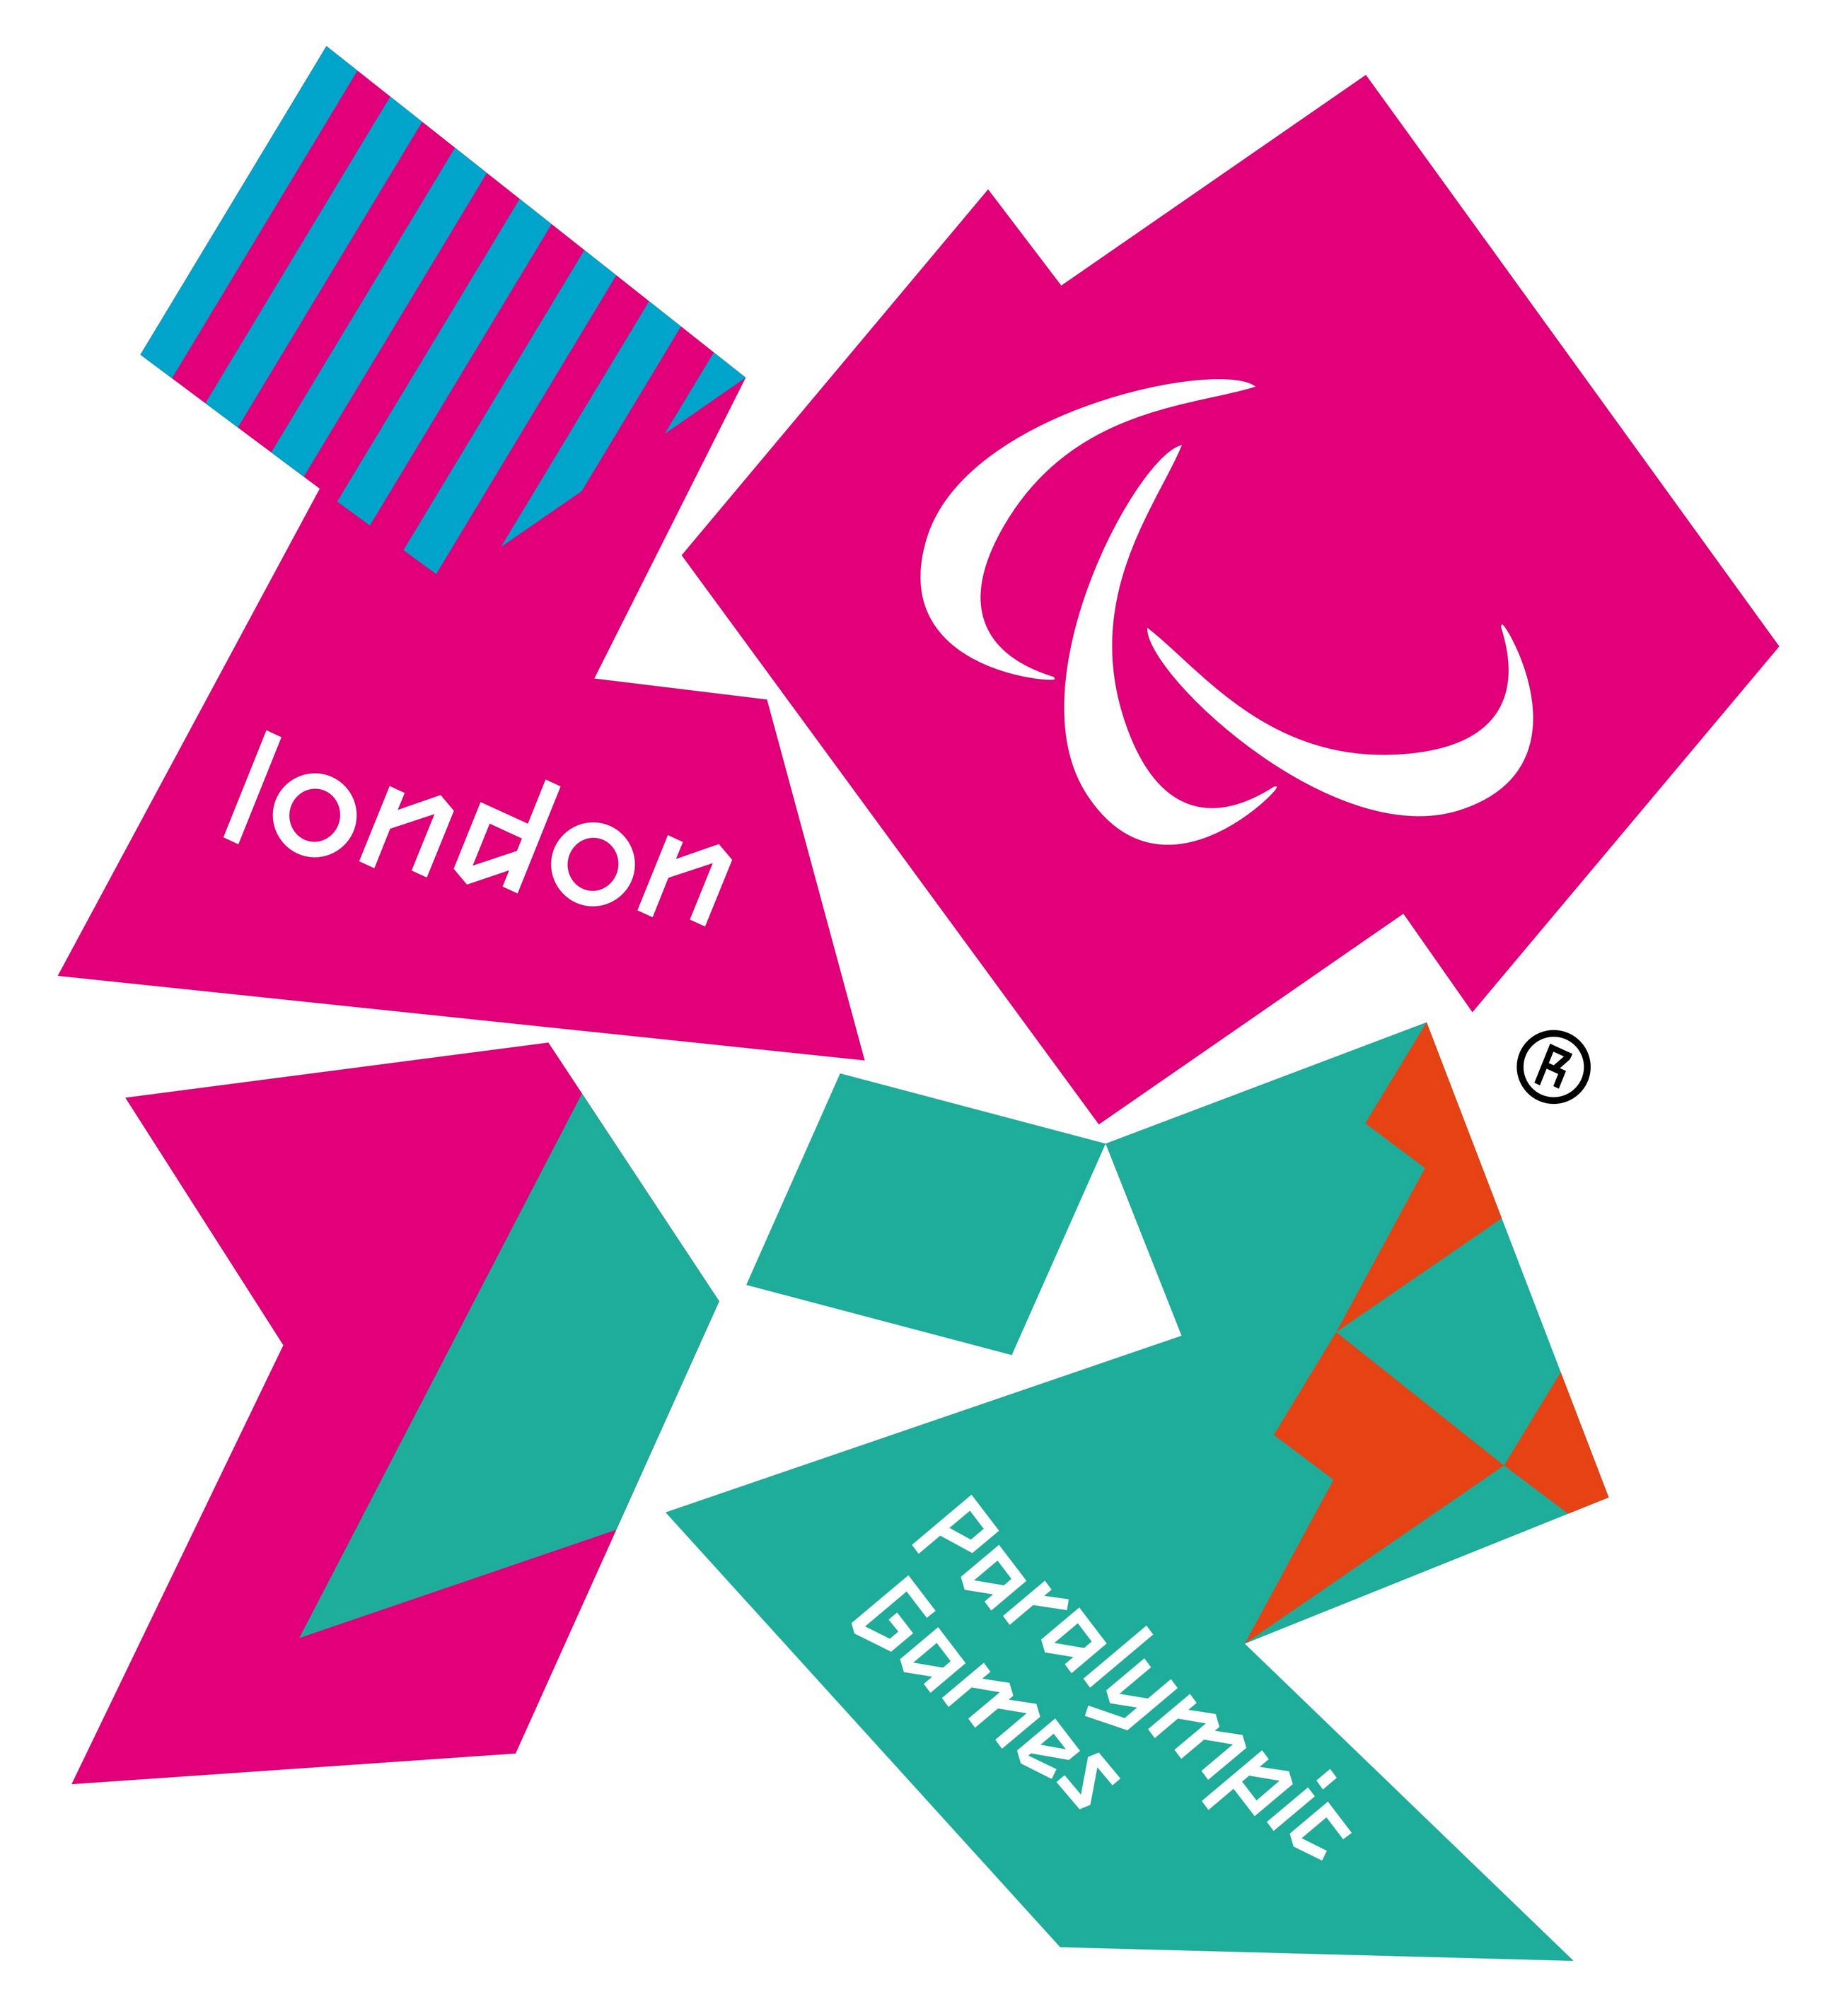 london-2012-olympics-paralympics-logo.jpg